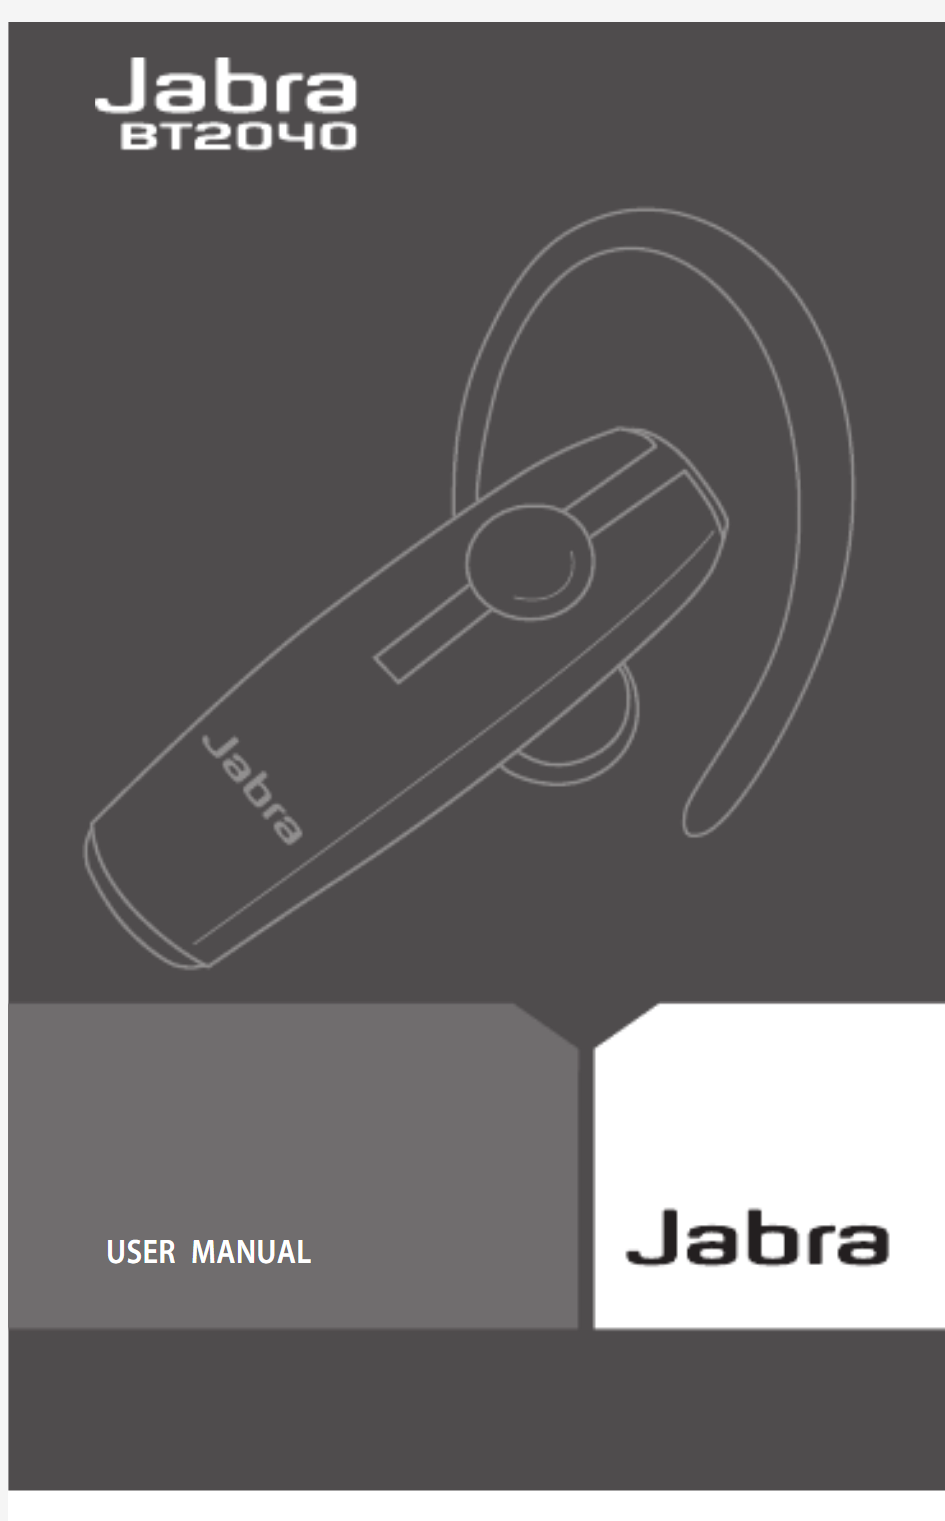 (捷波朗)jabra BT2040蓝牙耳机简体使用说明